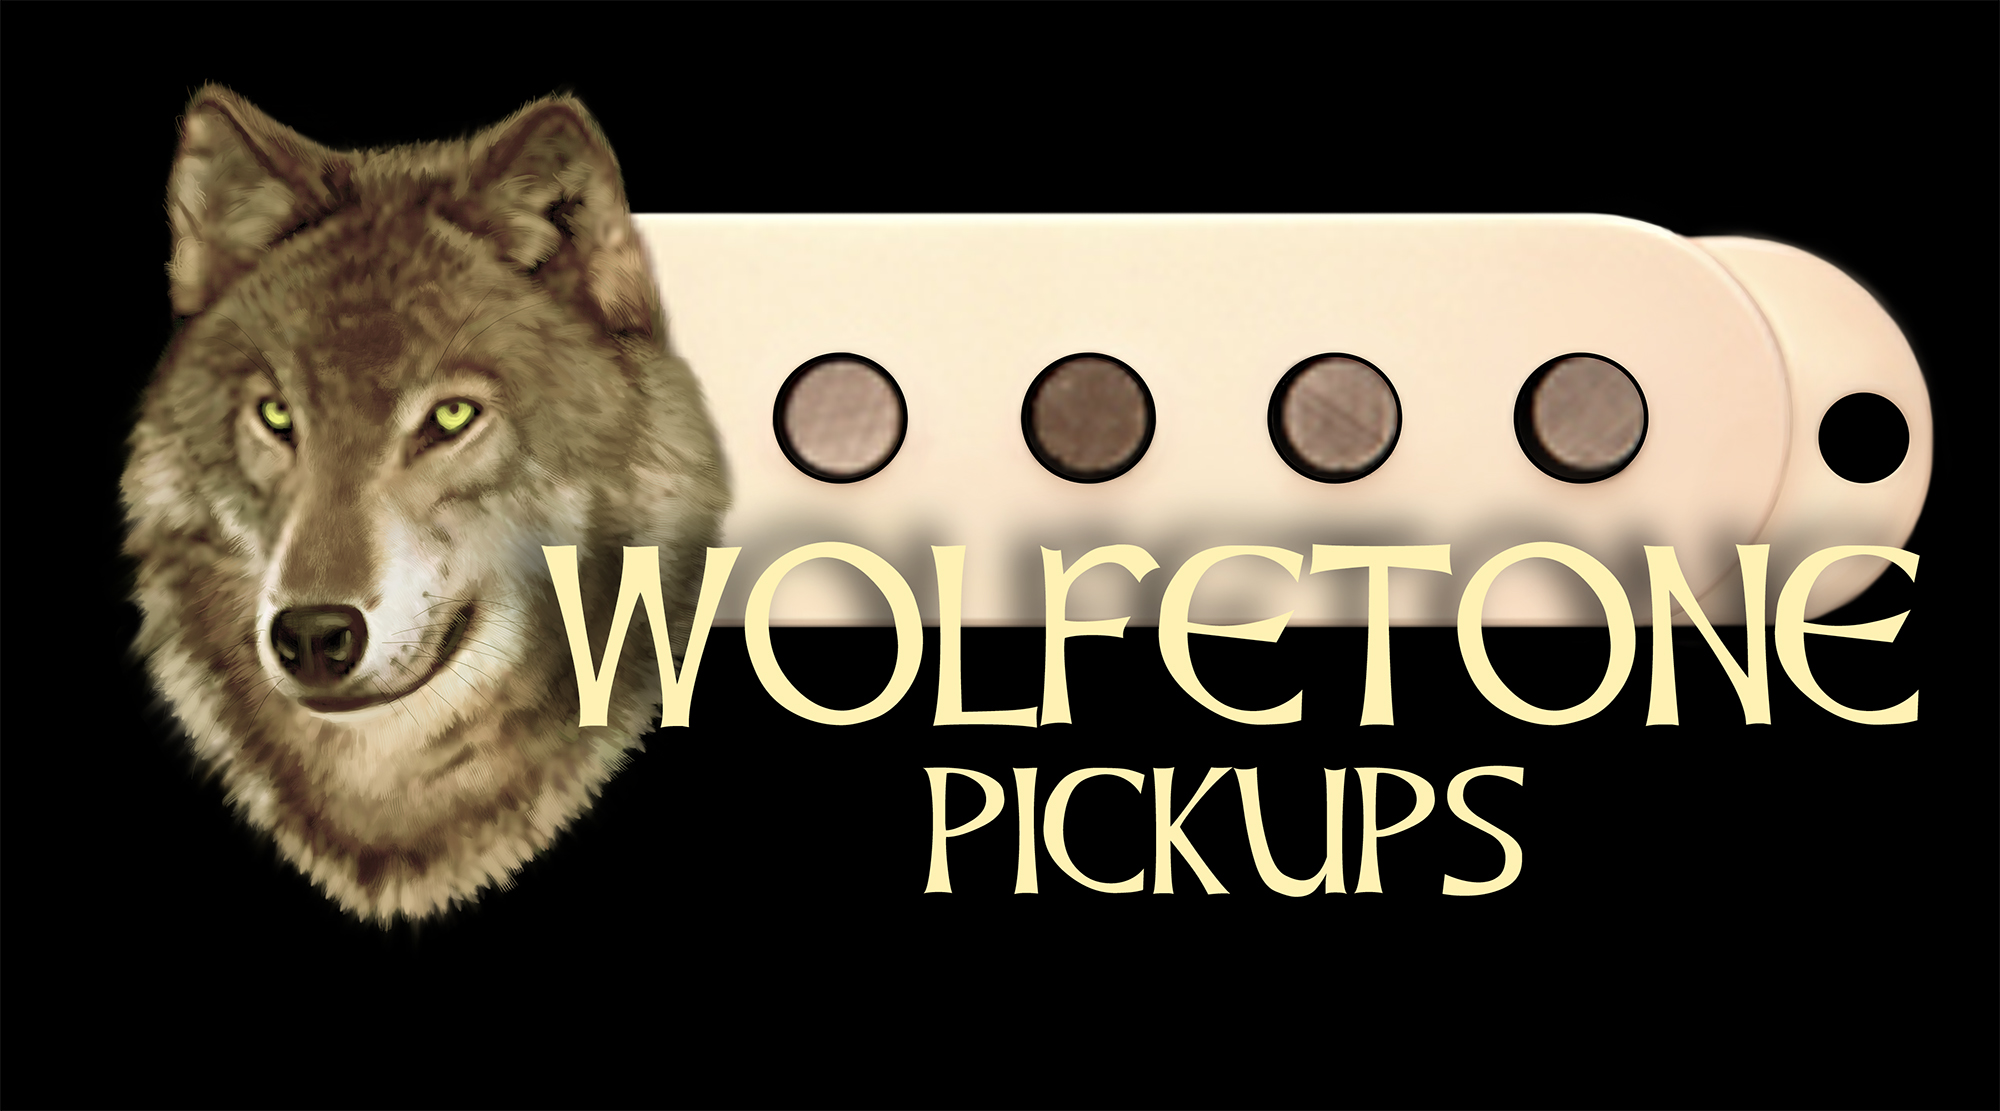 Wolfetone guitar pickups